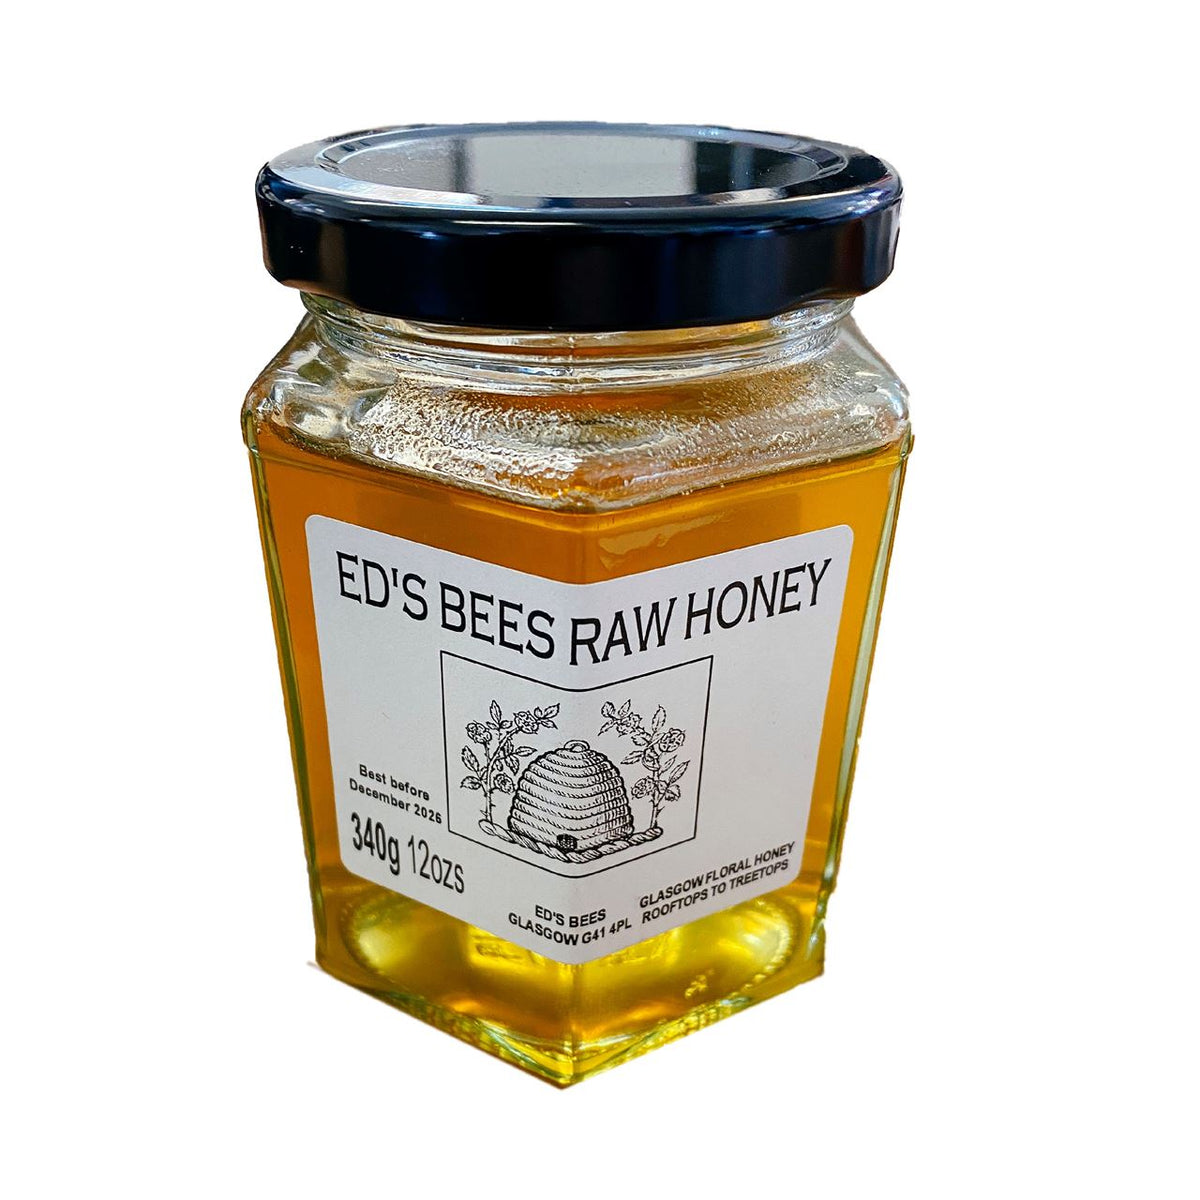 Ed's Bees Raw Honey